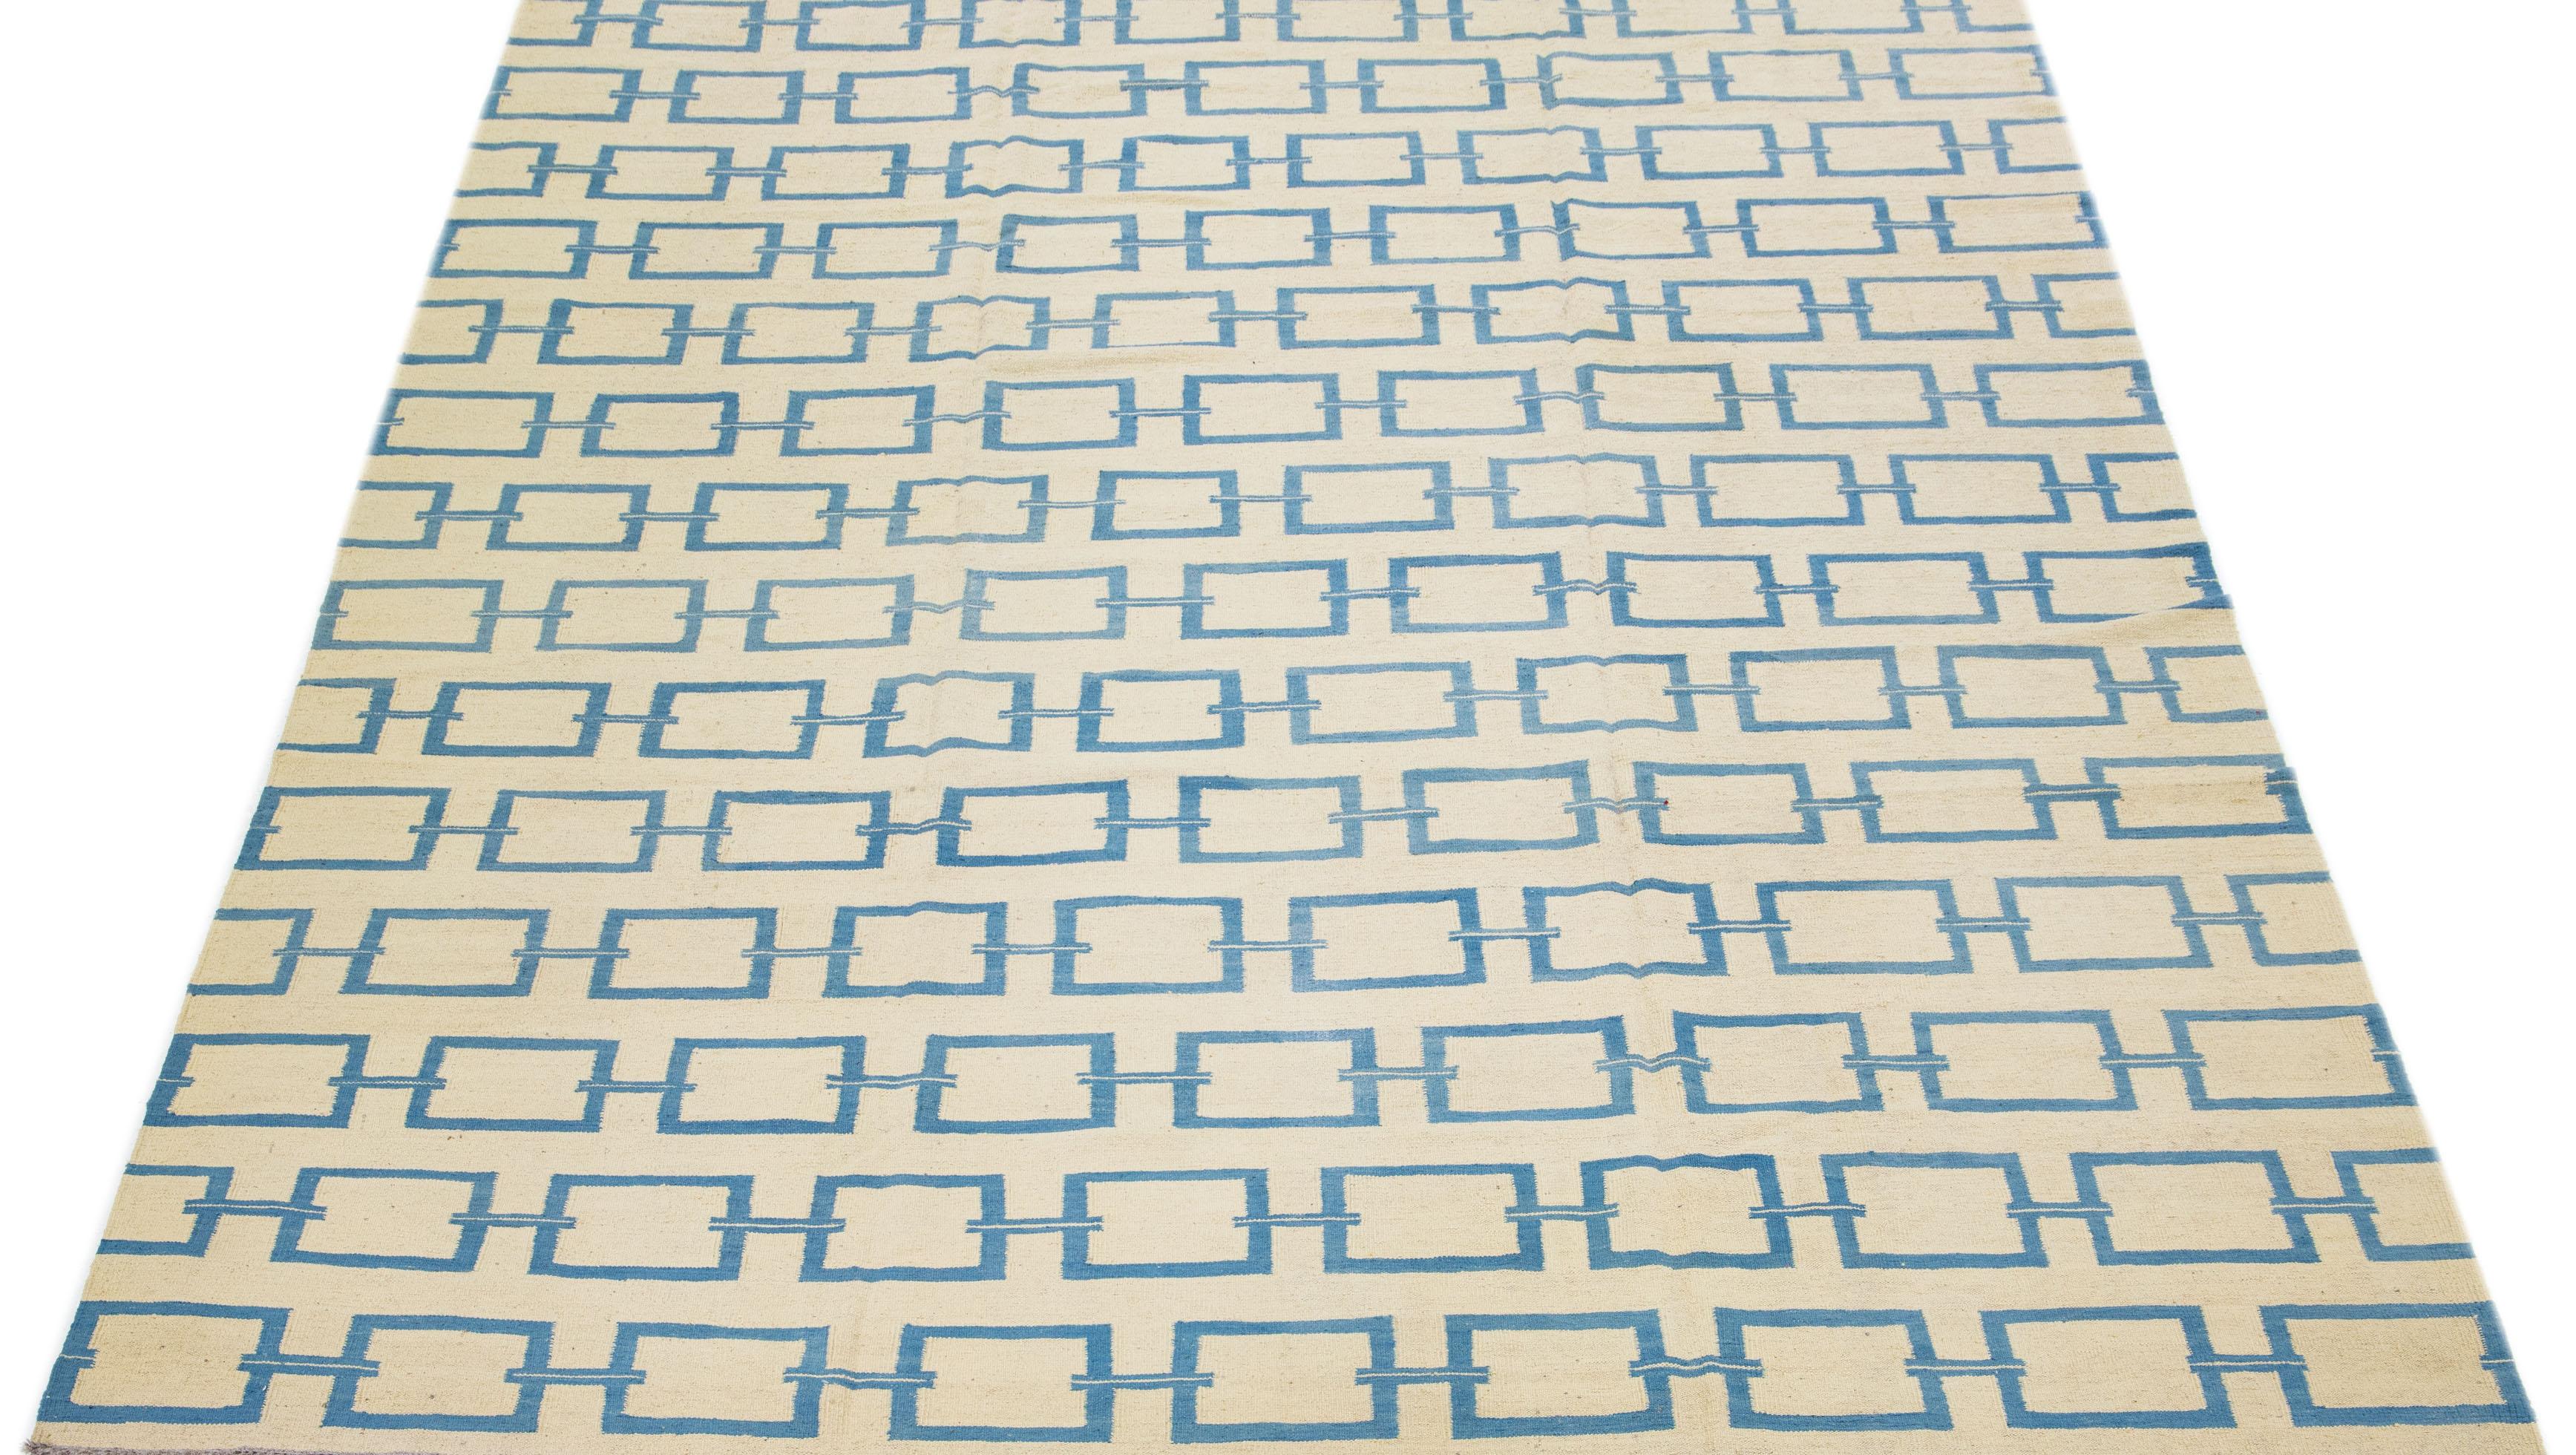 Dieser zeitgenössische Kilim-Teppich ist sorgfältig von Hand gewebt und hat ein dominantes beigefarbenes Feld, das durch komplizierte geometrische Muster in Blautönen hervorgehoben wird, die subtile, aber elegante Akzente setzen.

Dieser Teppich